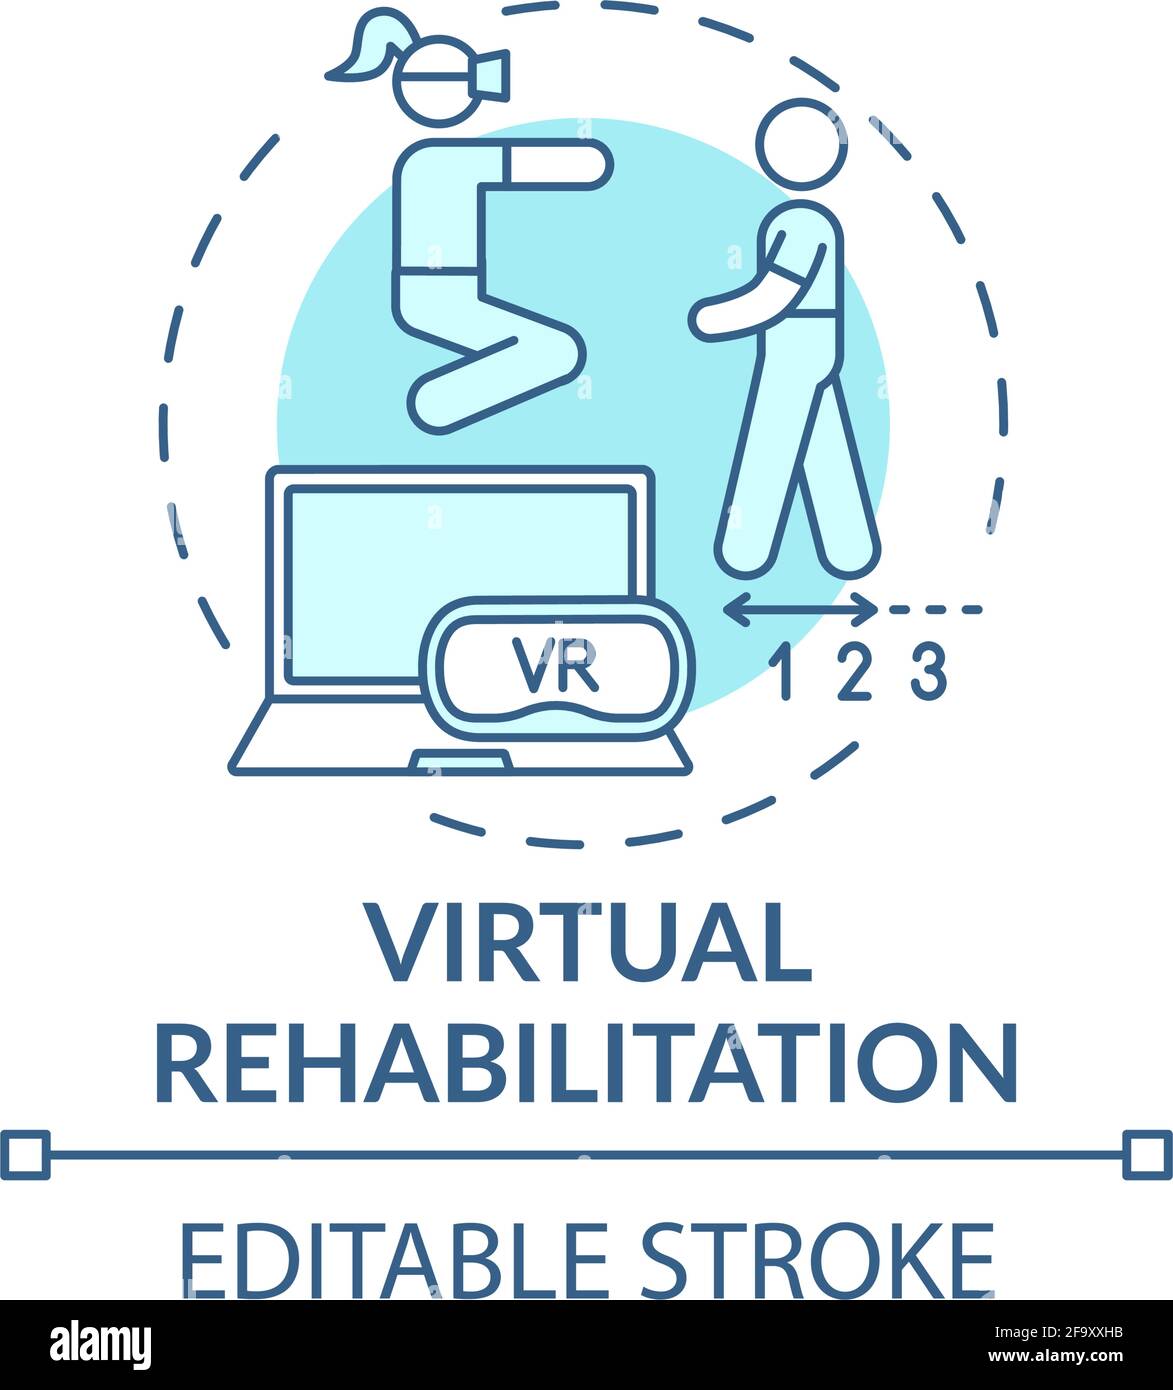 Virtual rehabilitation concept icon Stock Vector